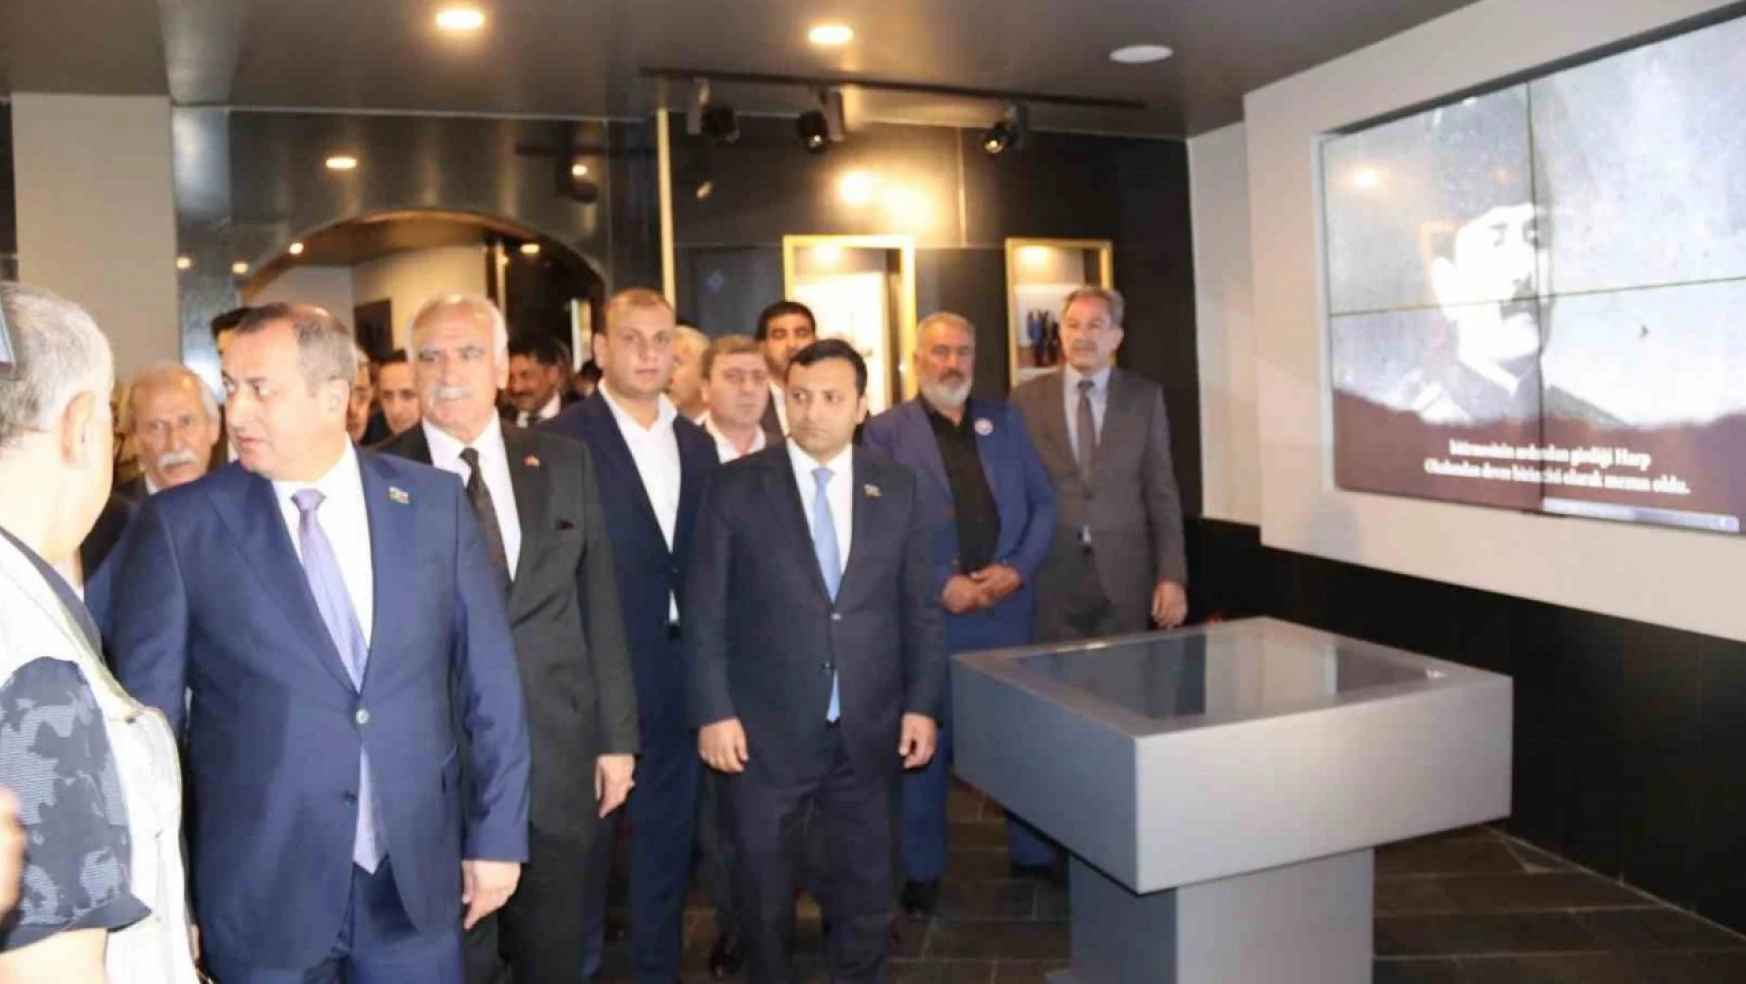 Azerbaycan heyetinden Iğdır'daki kurumlara ziyaret